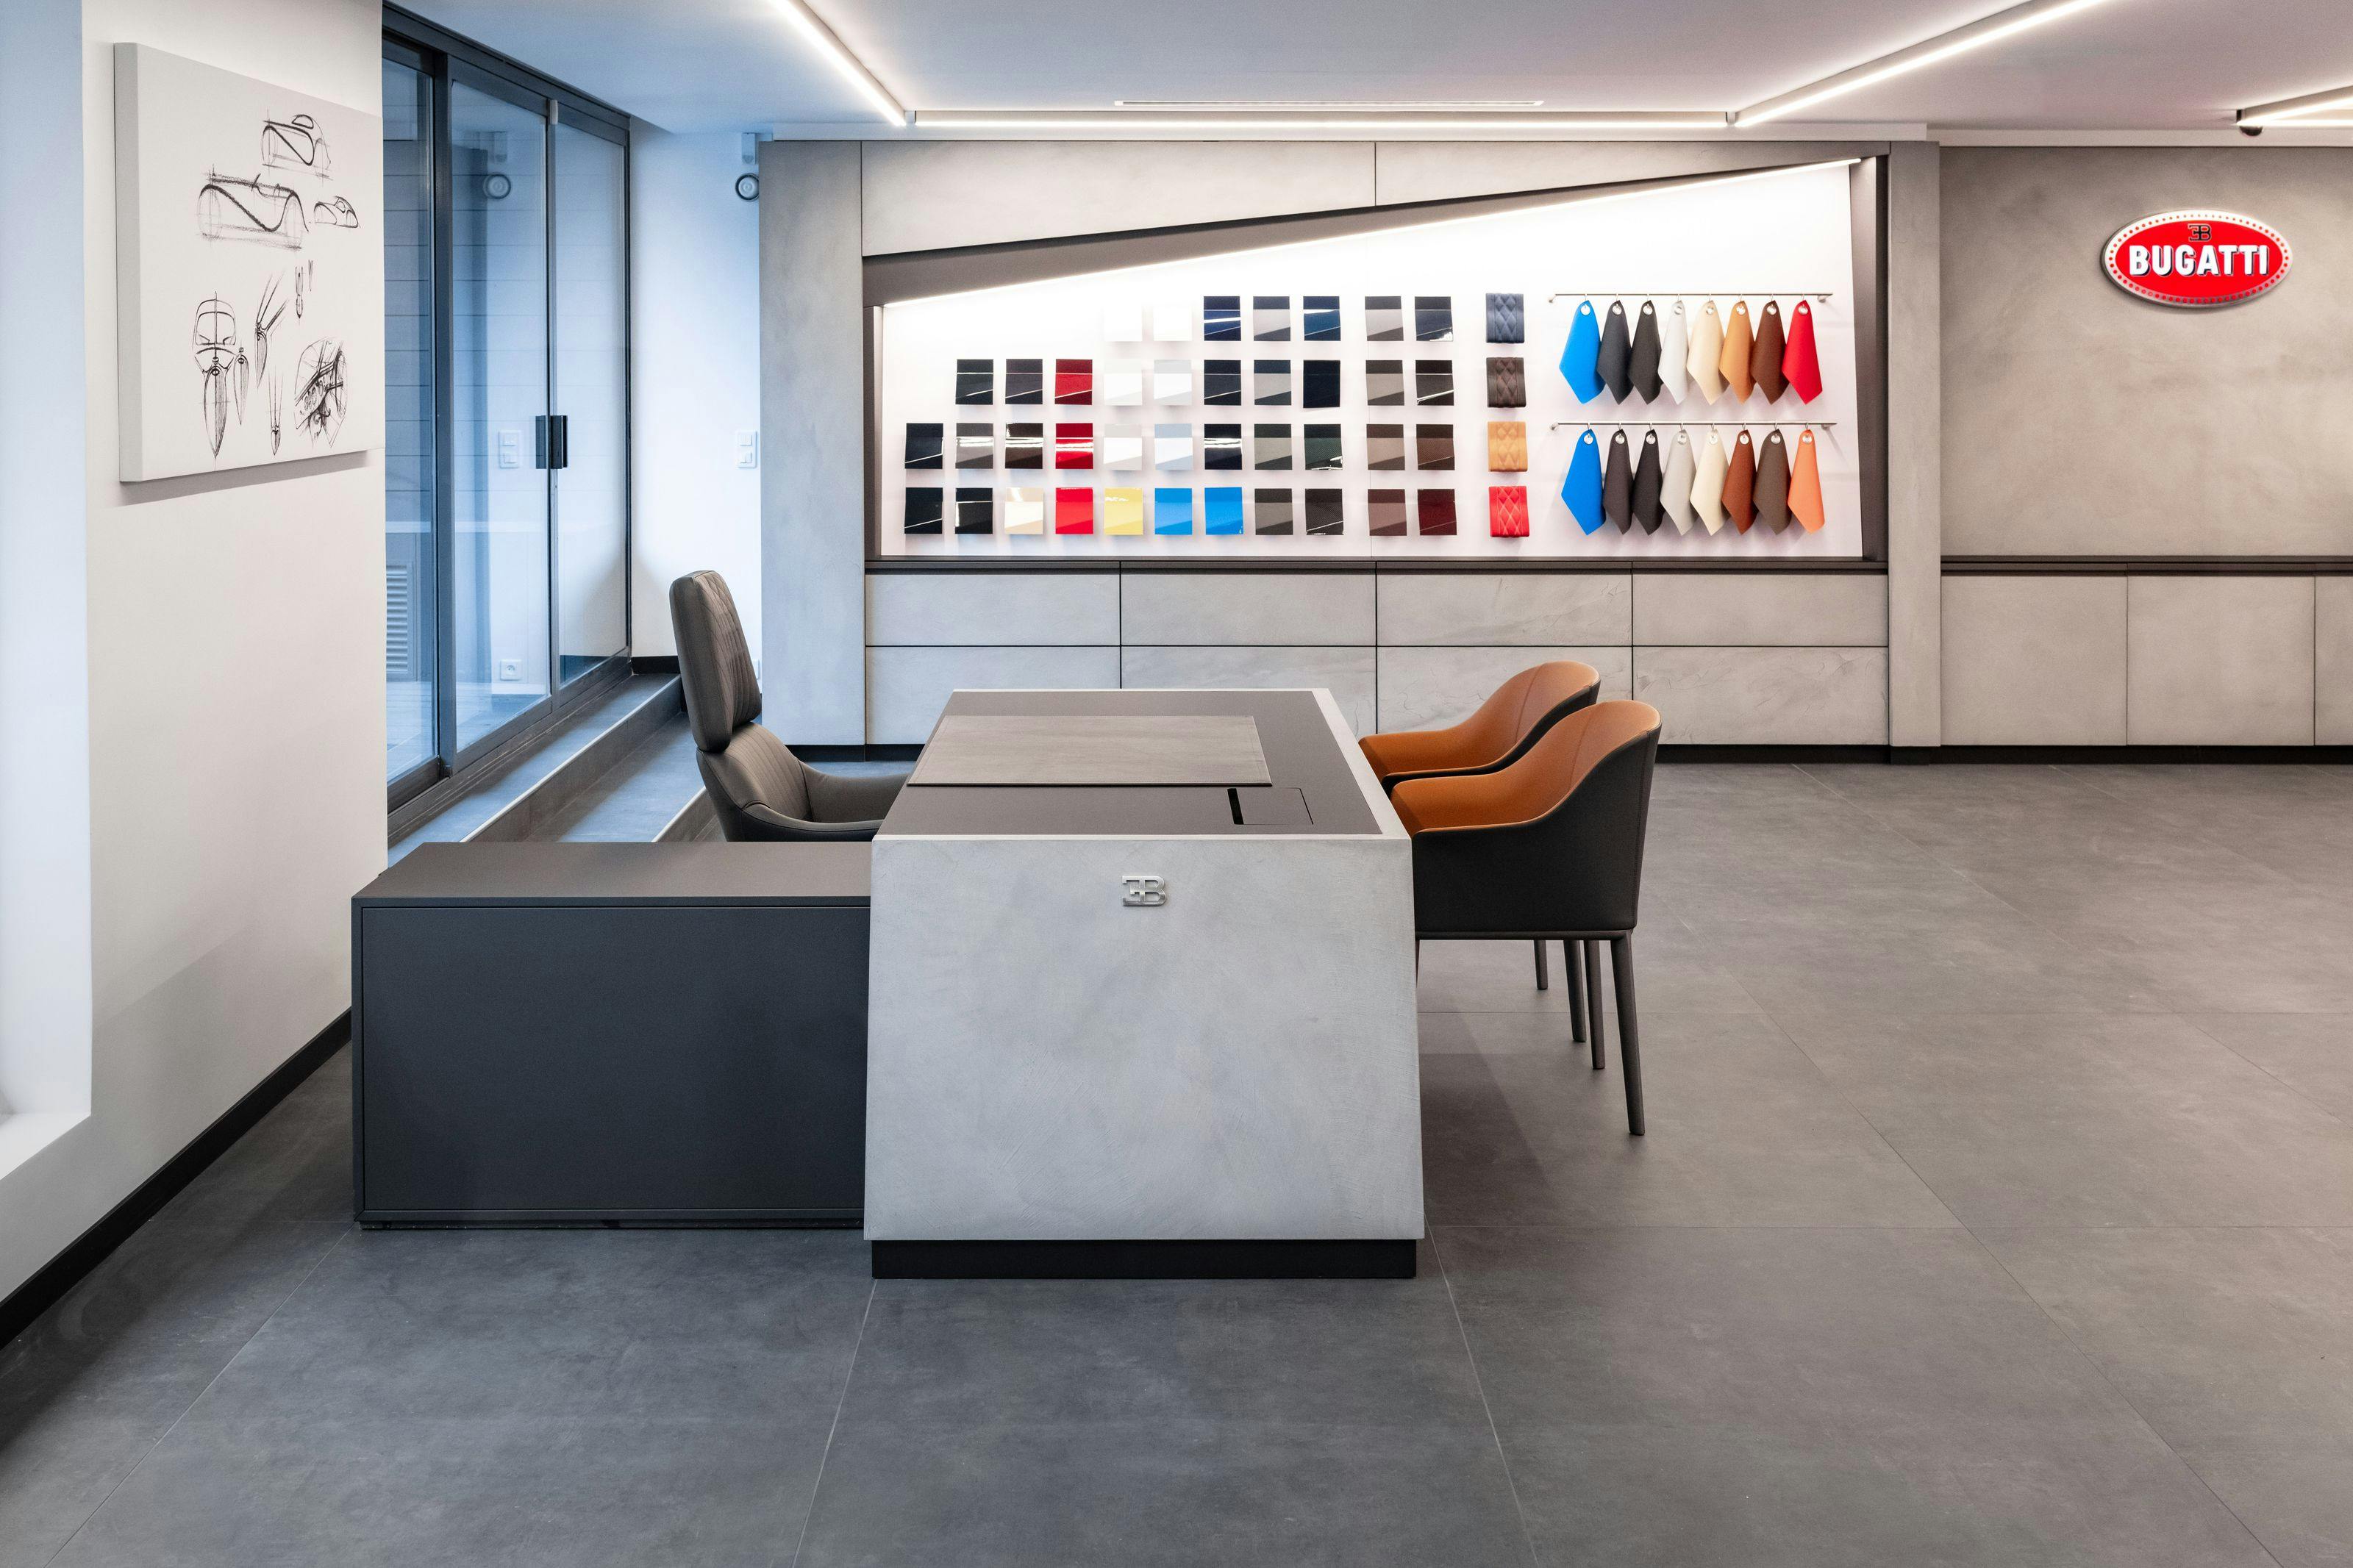 Bugatti opens a new showroom in Paris